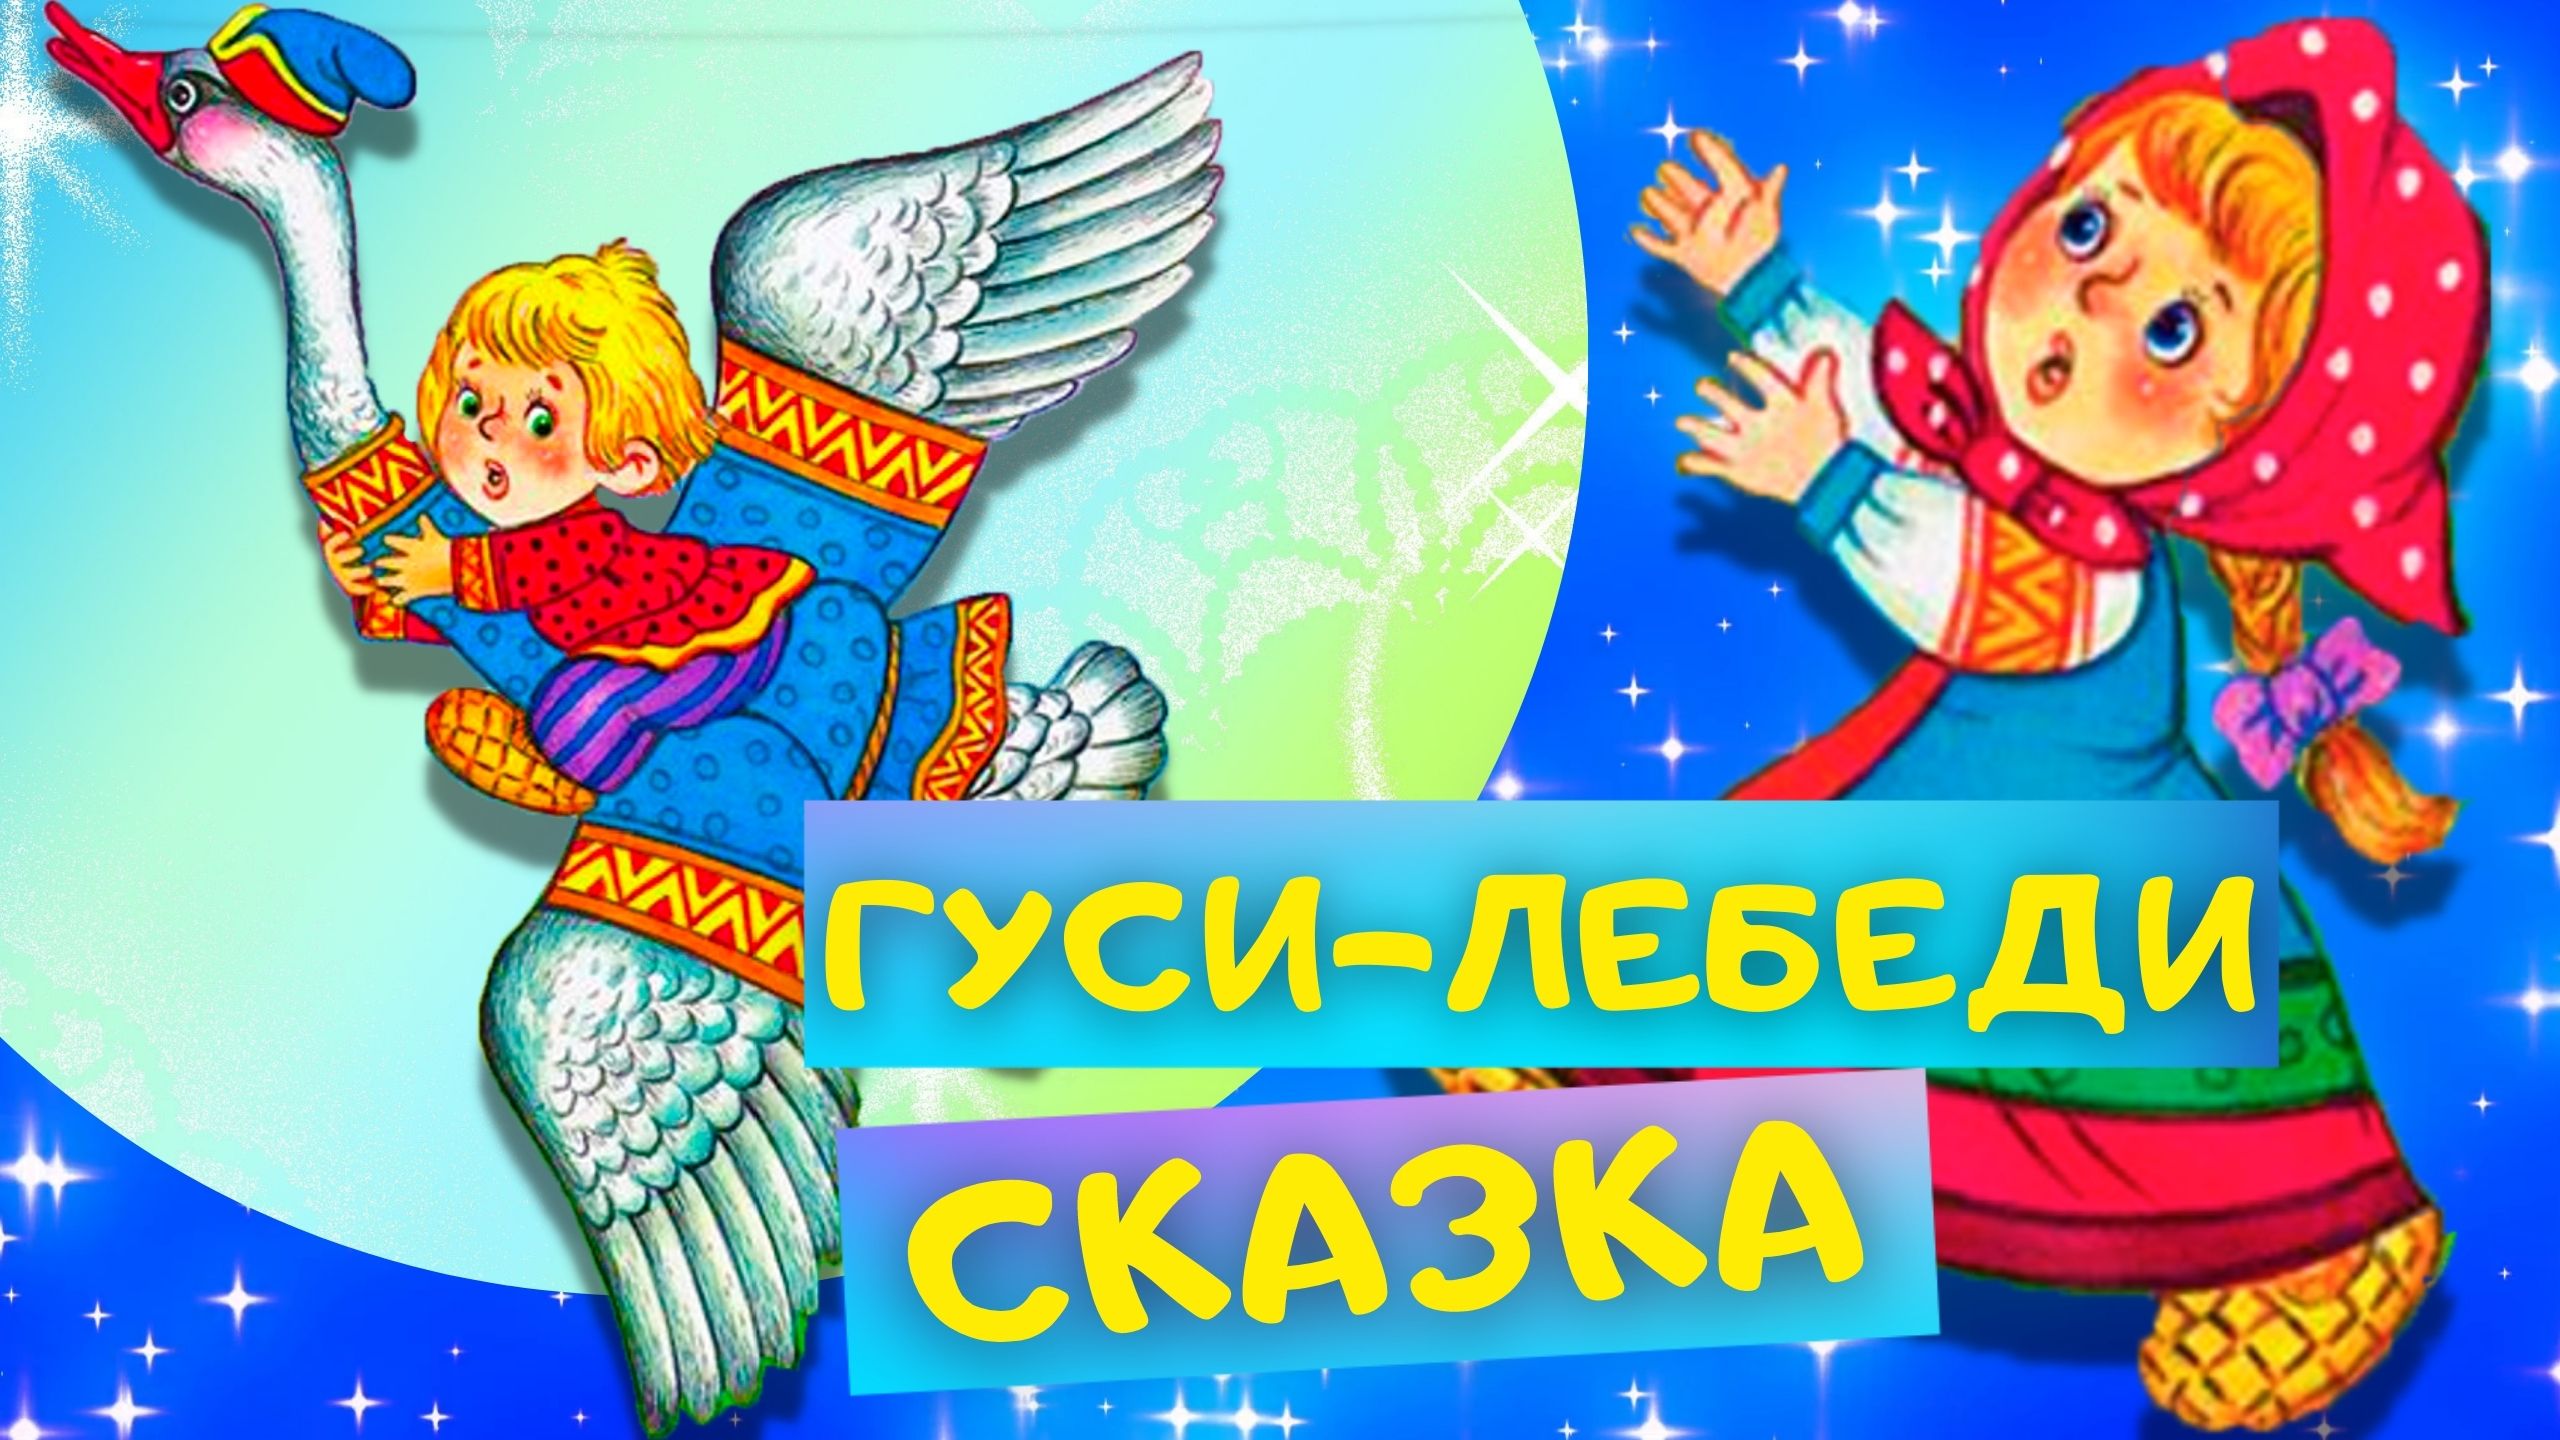 ГУСИ-ЛЕБЕДИ - Русская народная сказка. Слушать АУДИОСКАЗКУ для детей онлайн